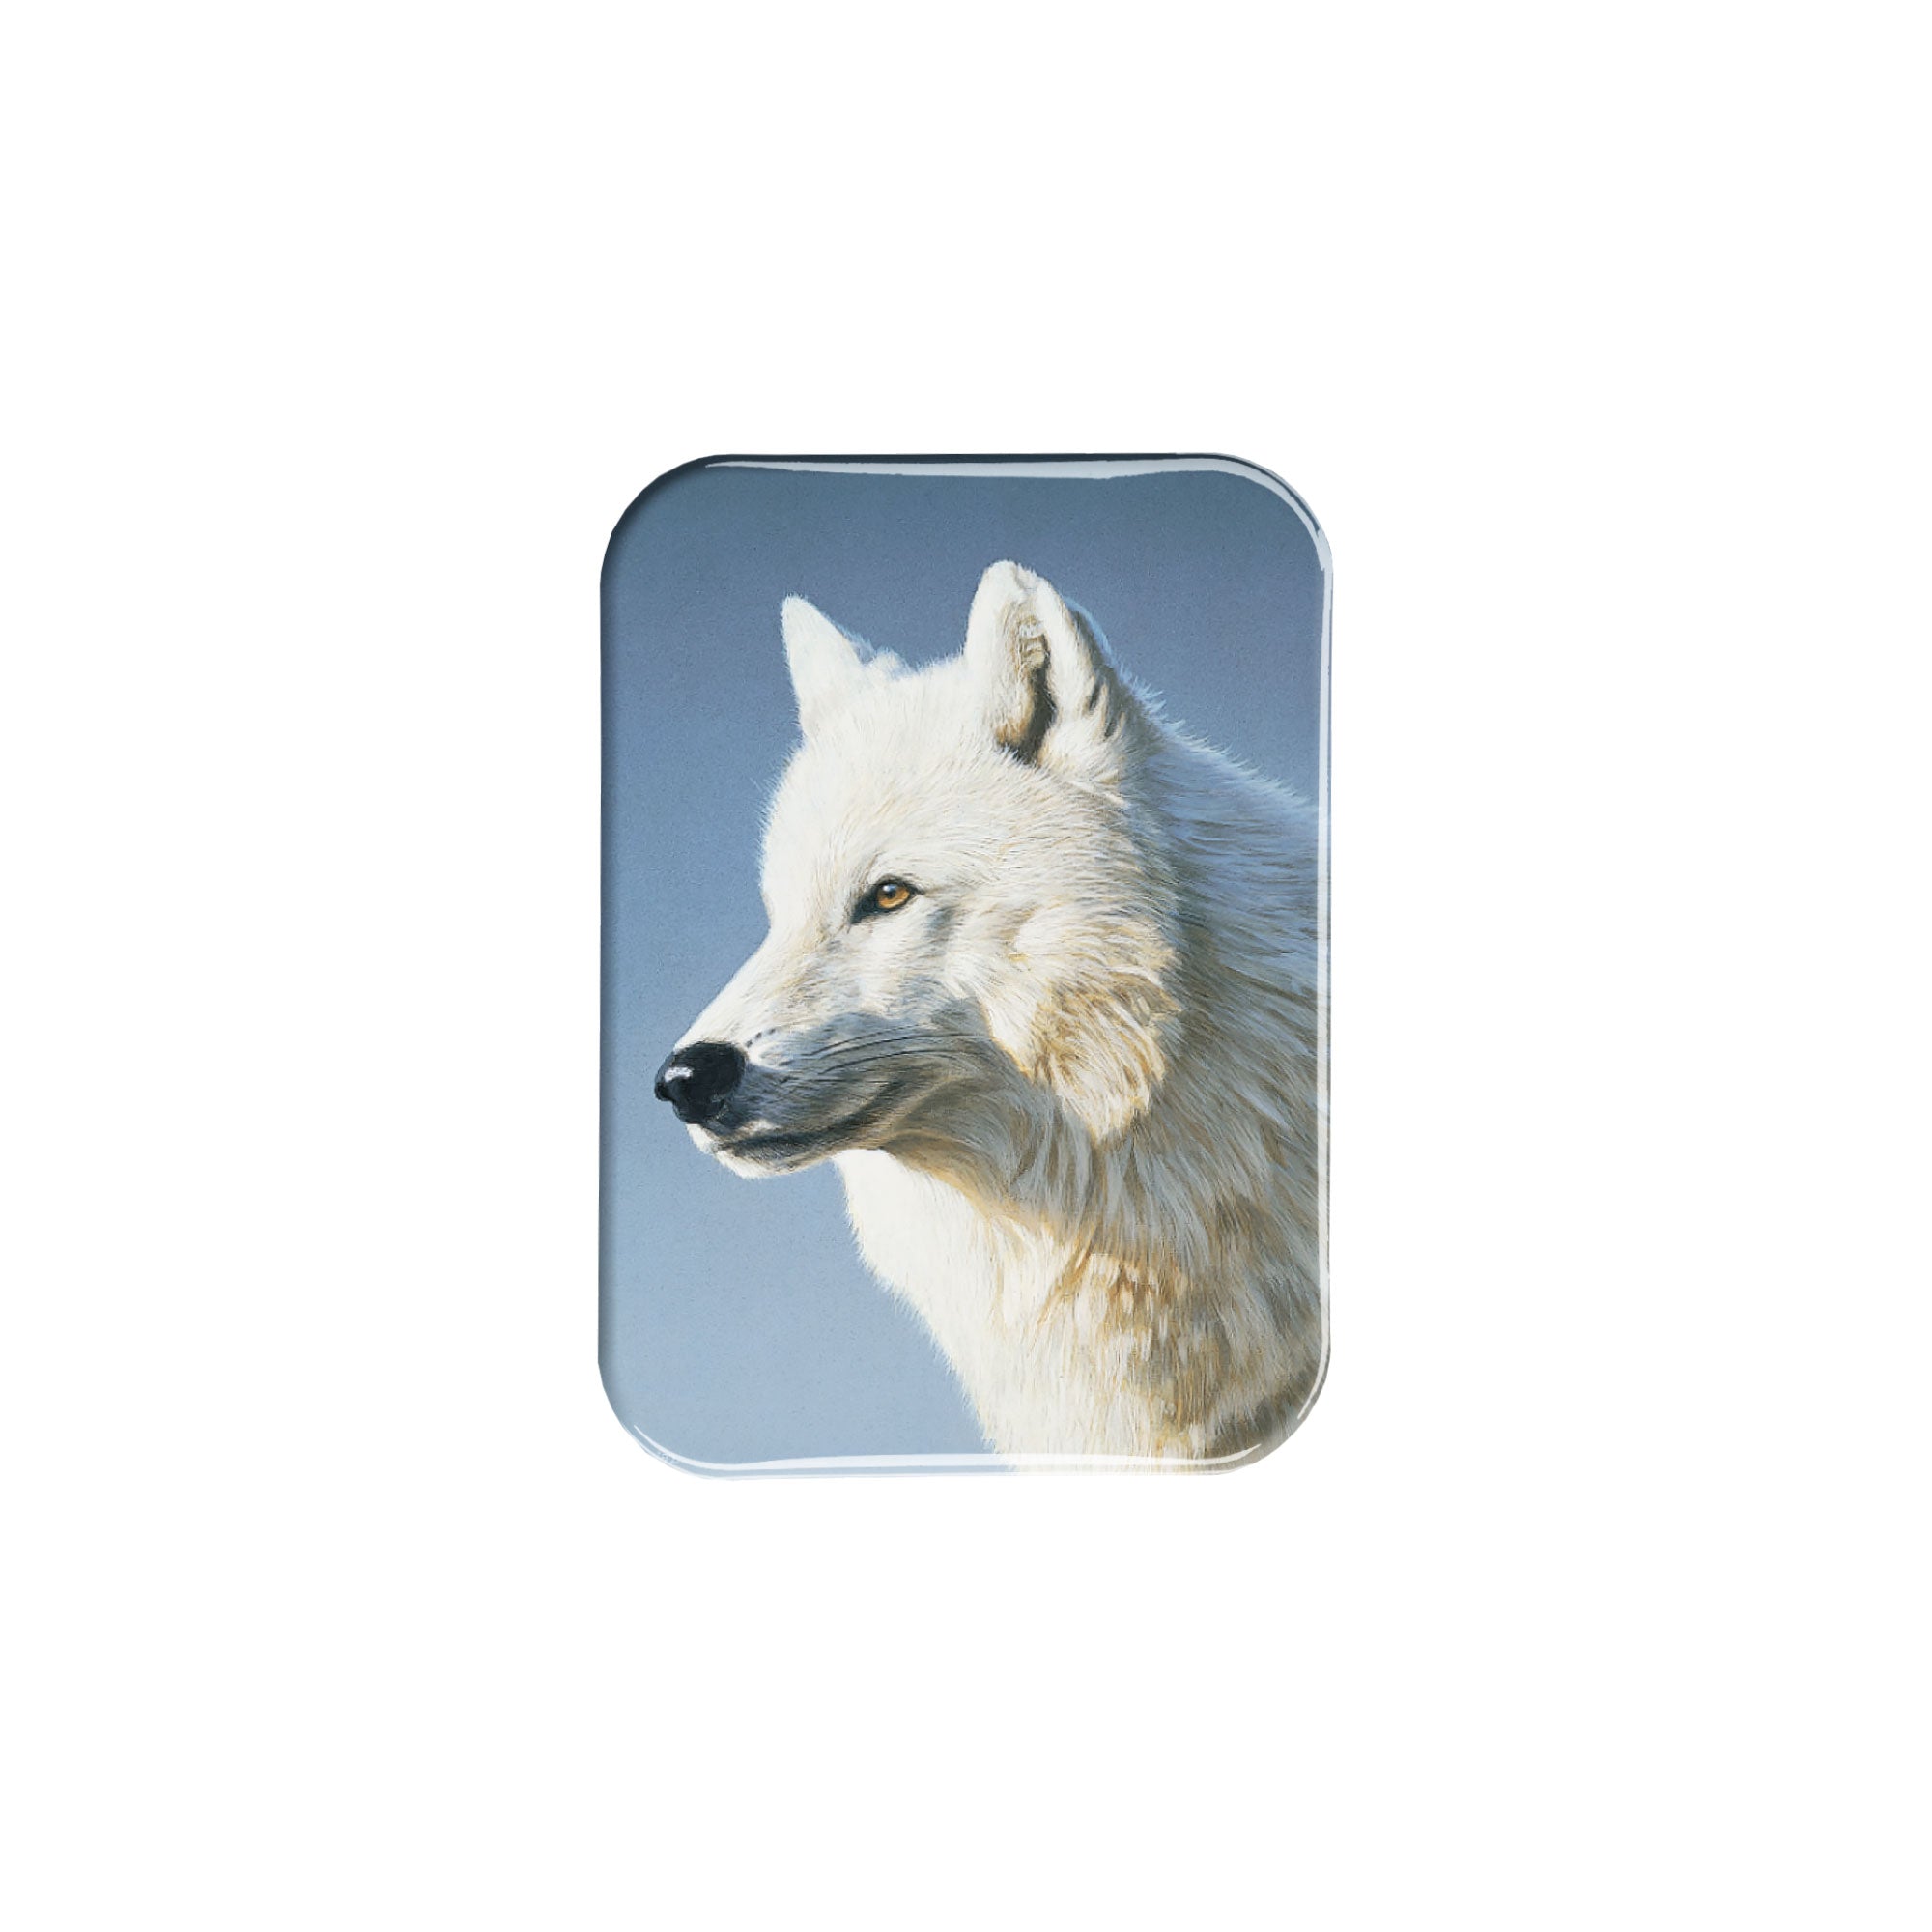 "Artic Wolf Portrait" - 2.5" X 3.5" Rectangle Fridge Magnets